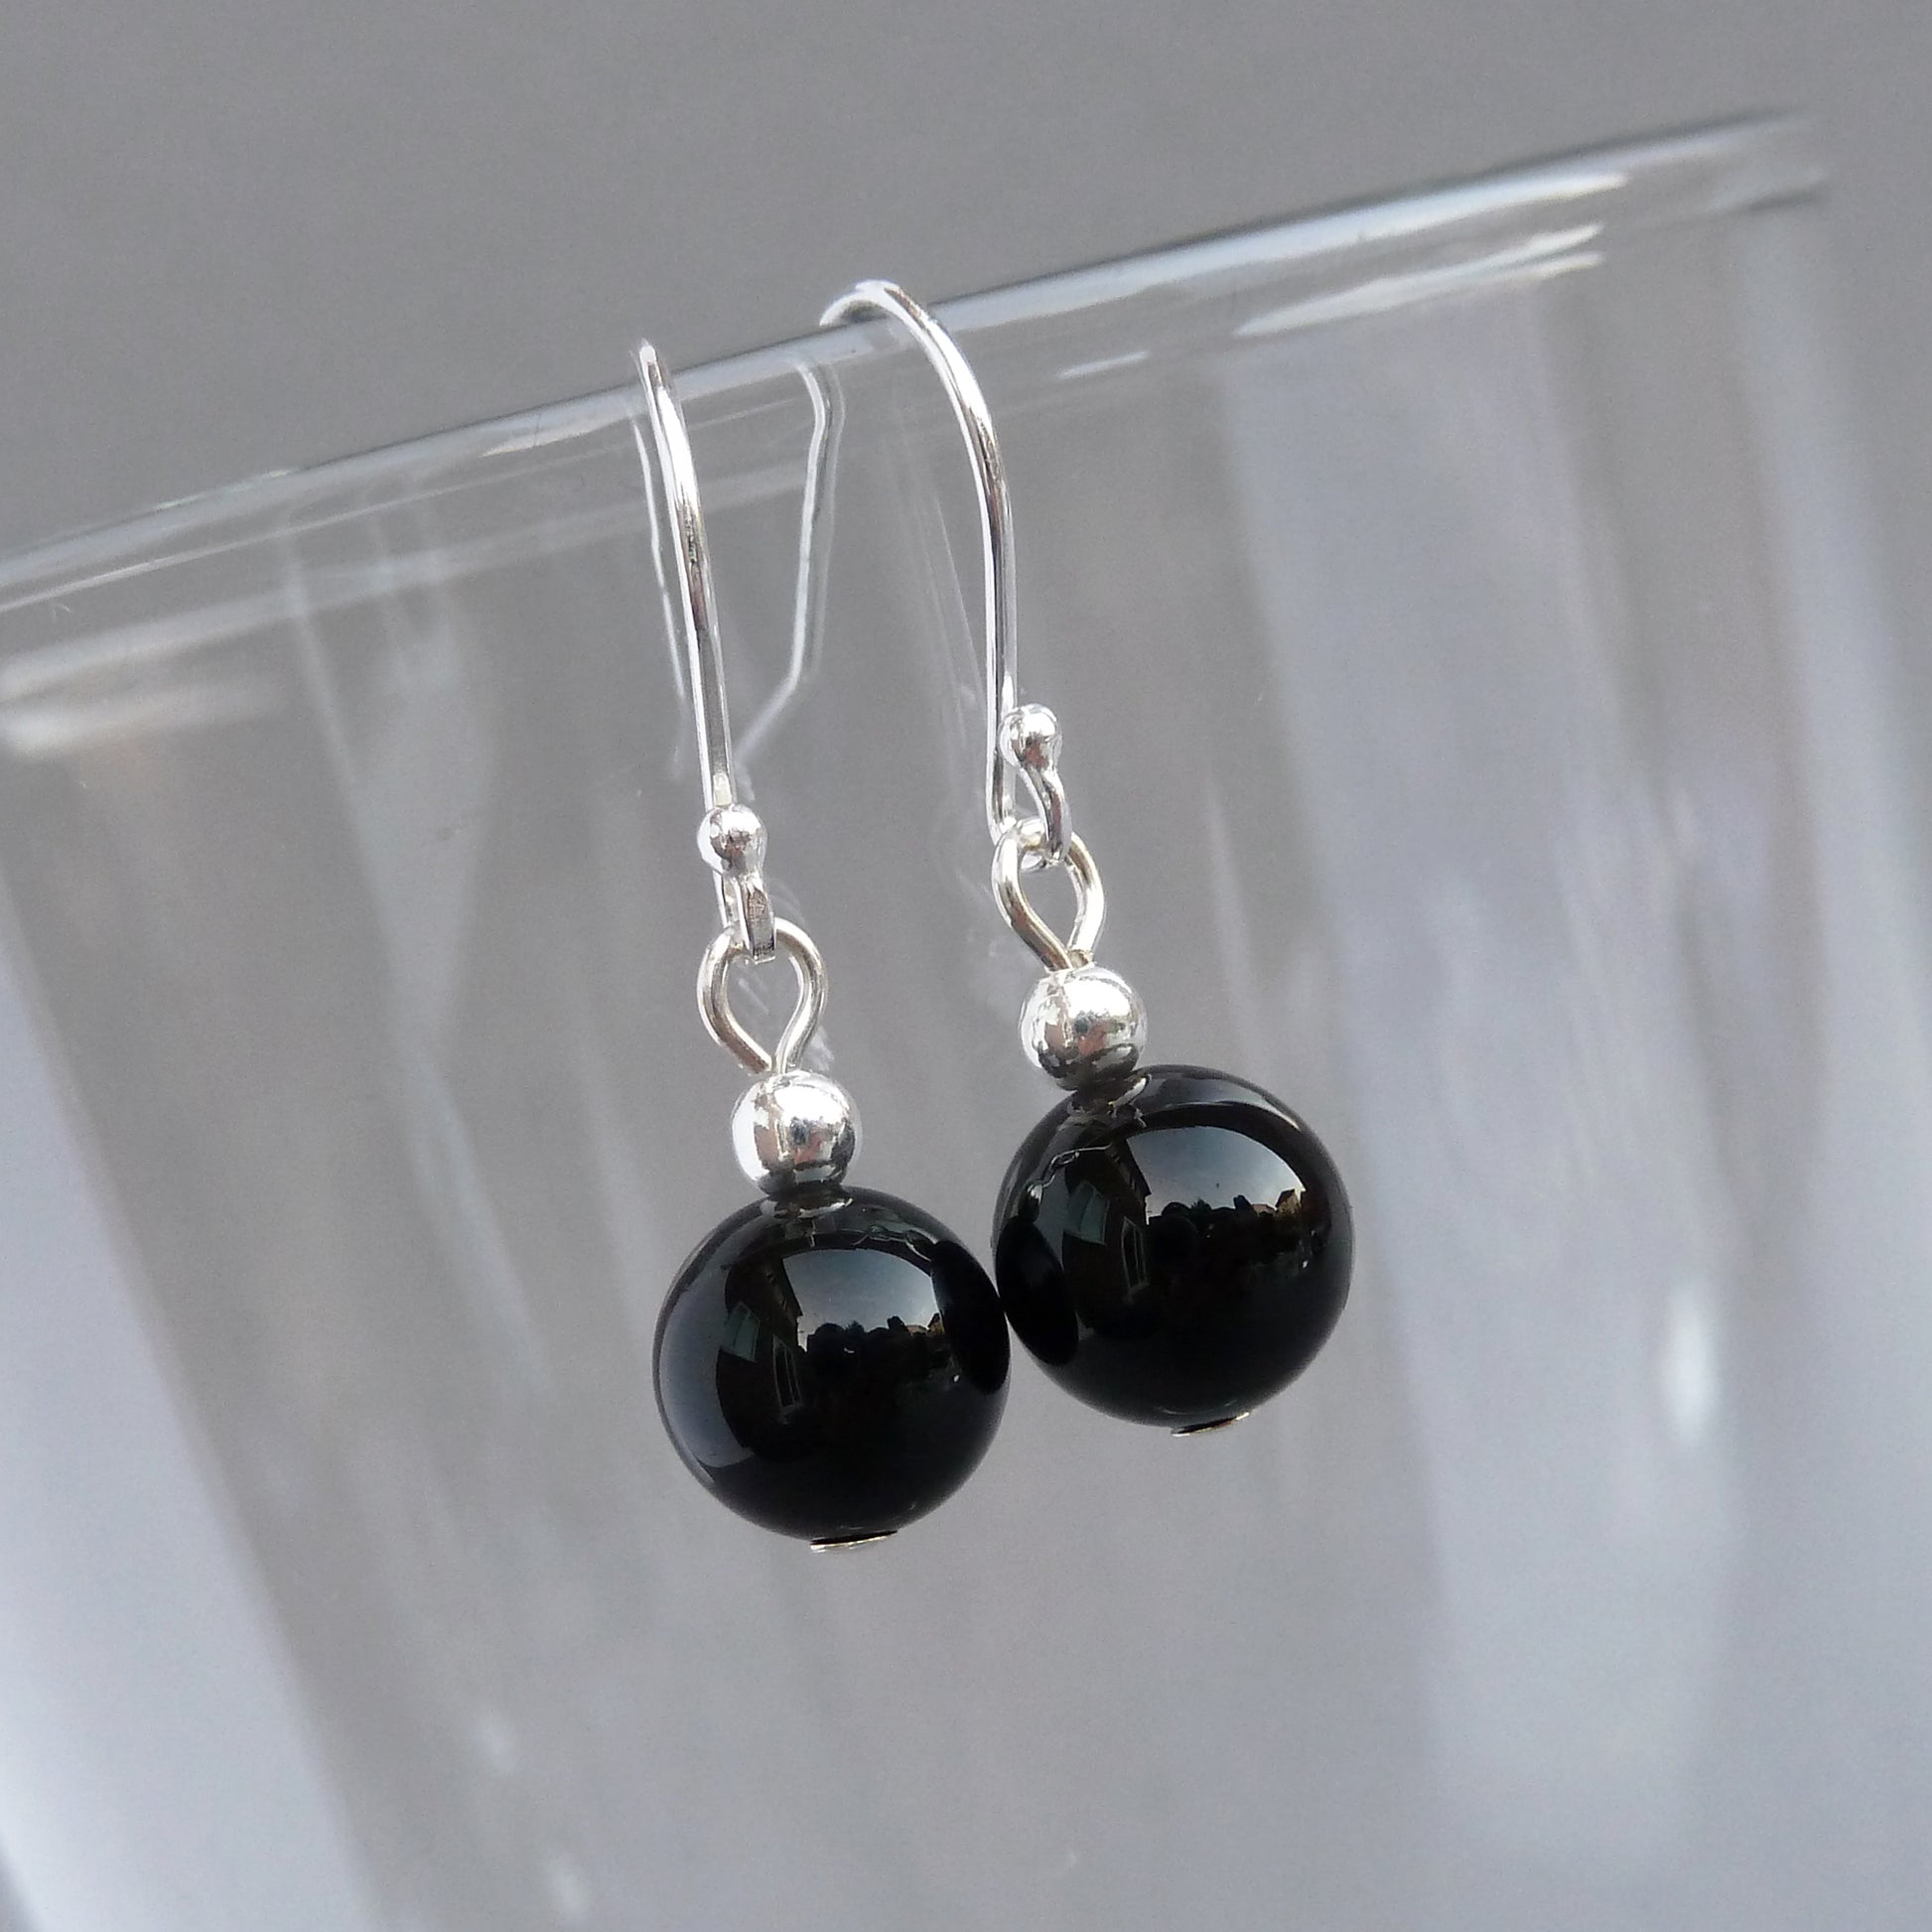 Simple black onyx drop earrings